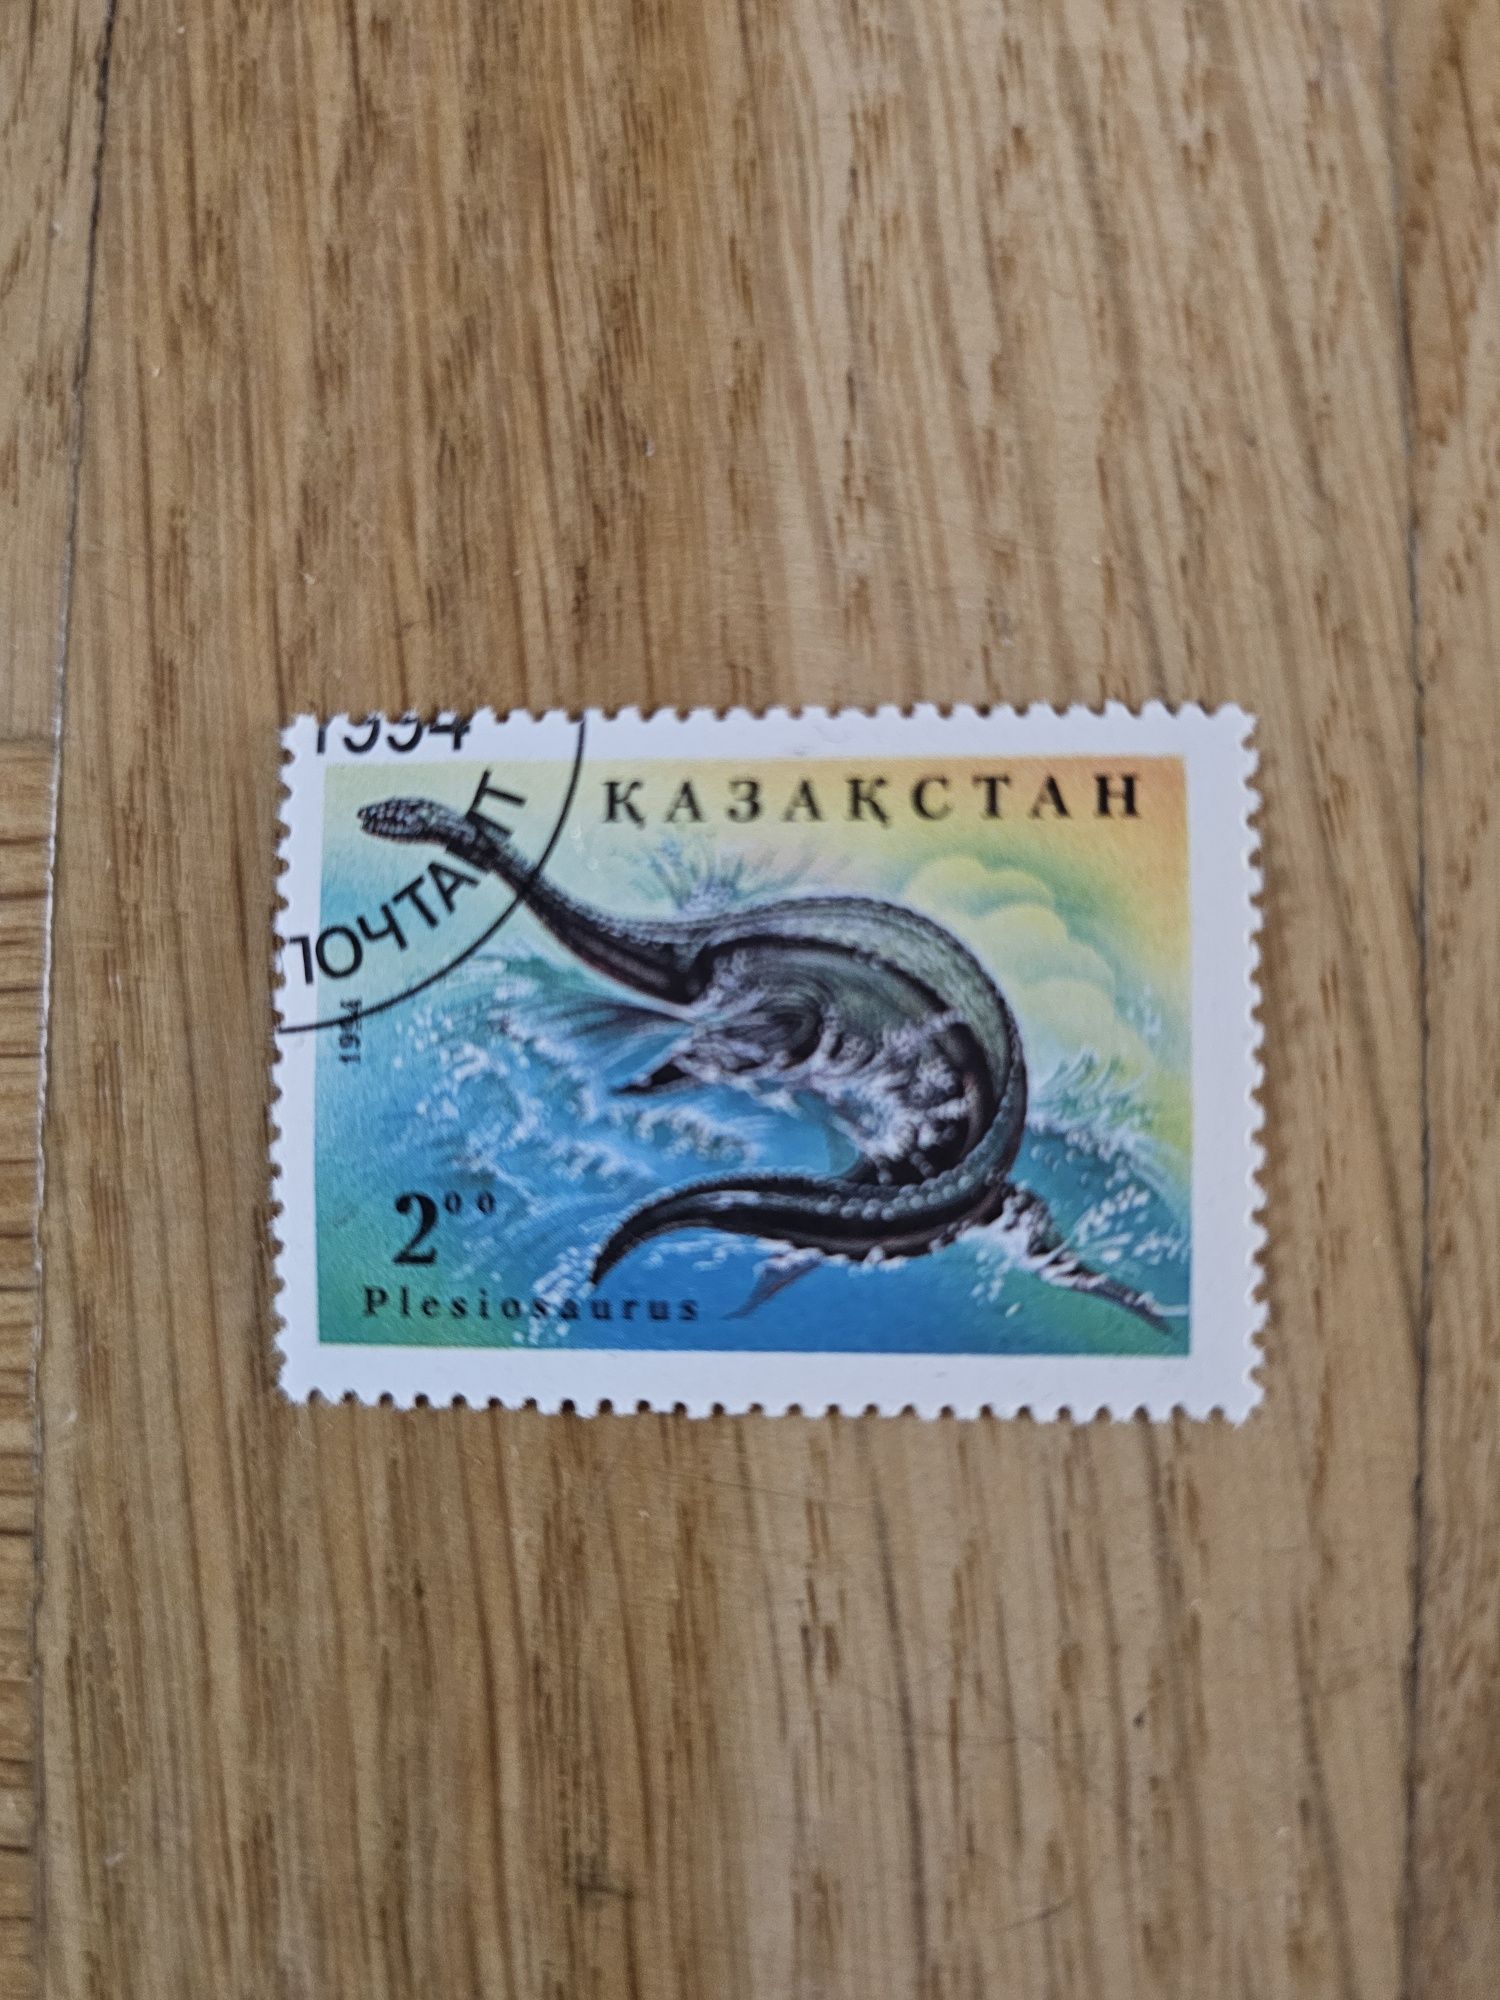 Znaczek pocztowy Kazachstan - Dinozaur